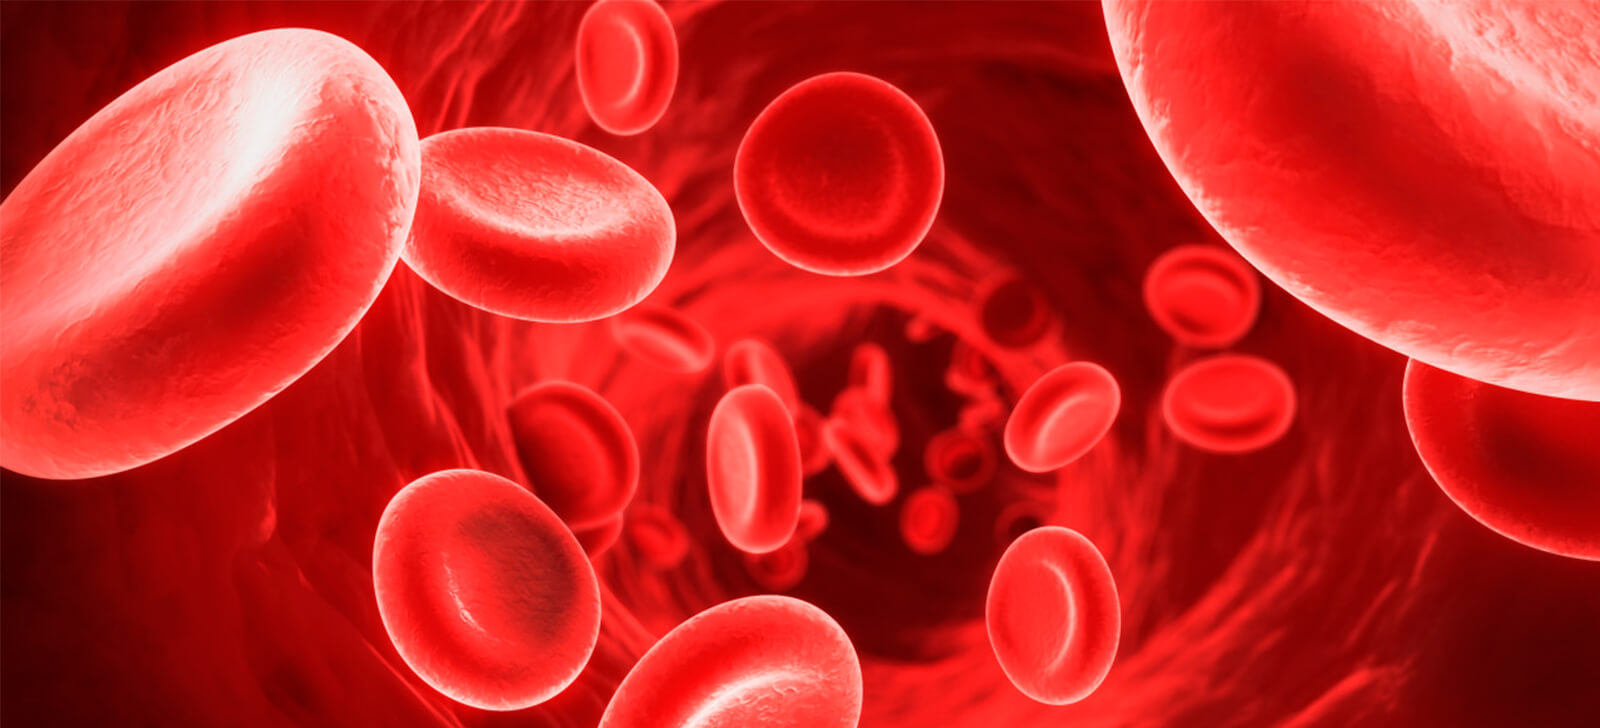 Conheça os melhores tratamentos naturais para anemia